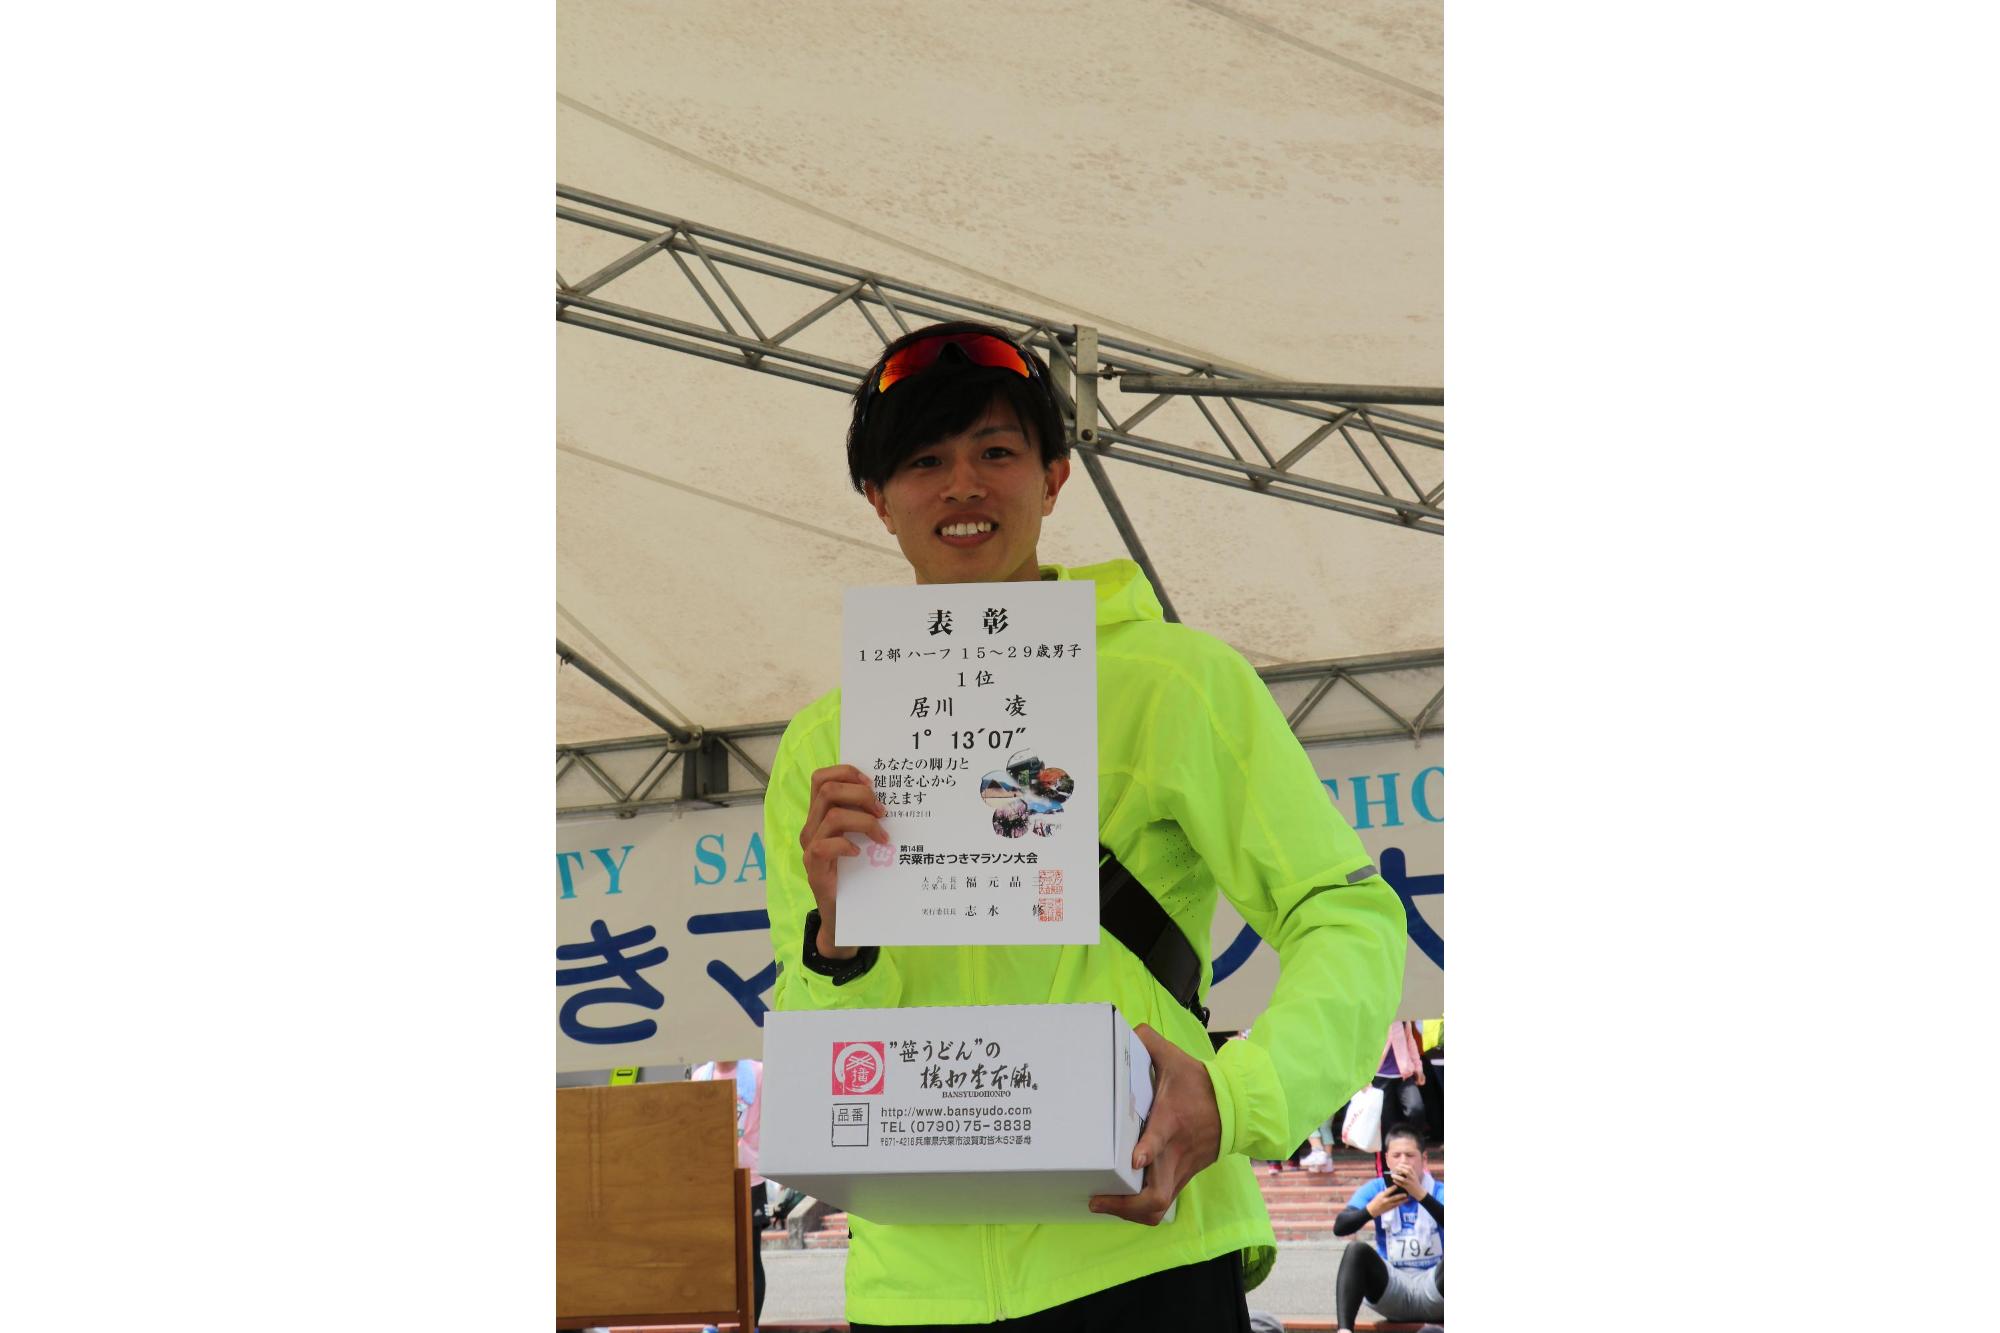 上の写真で力走していた居川さんがハーフの部一位の賞状と景品を手にしている記念写真